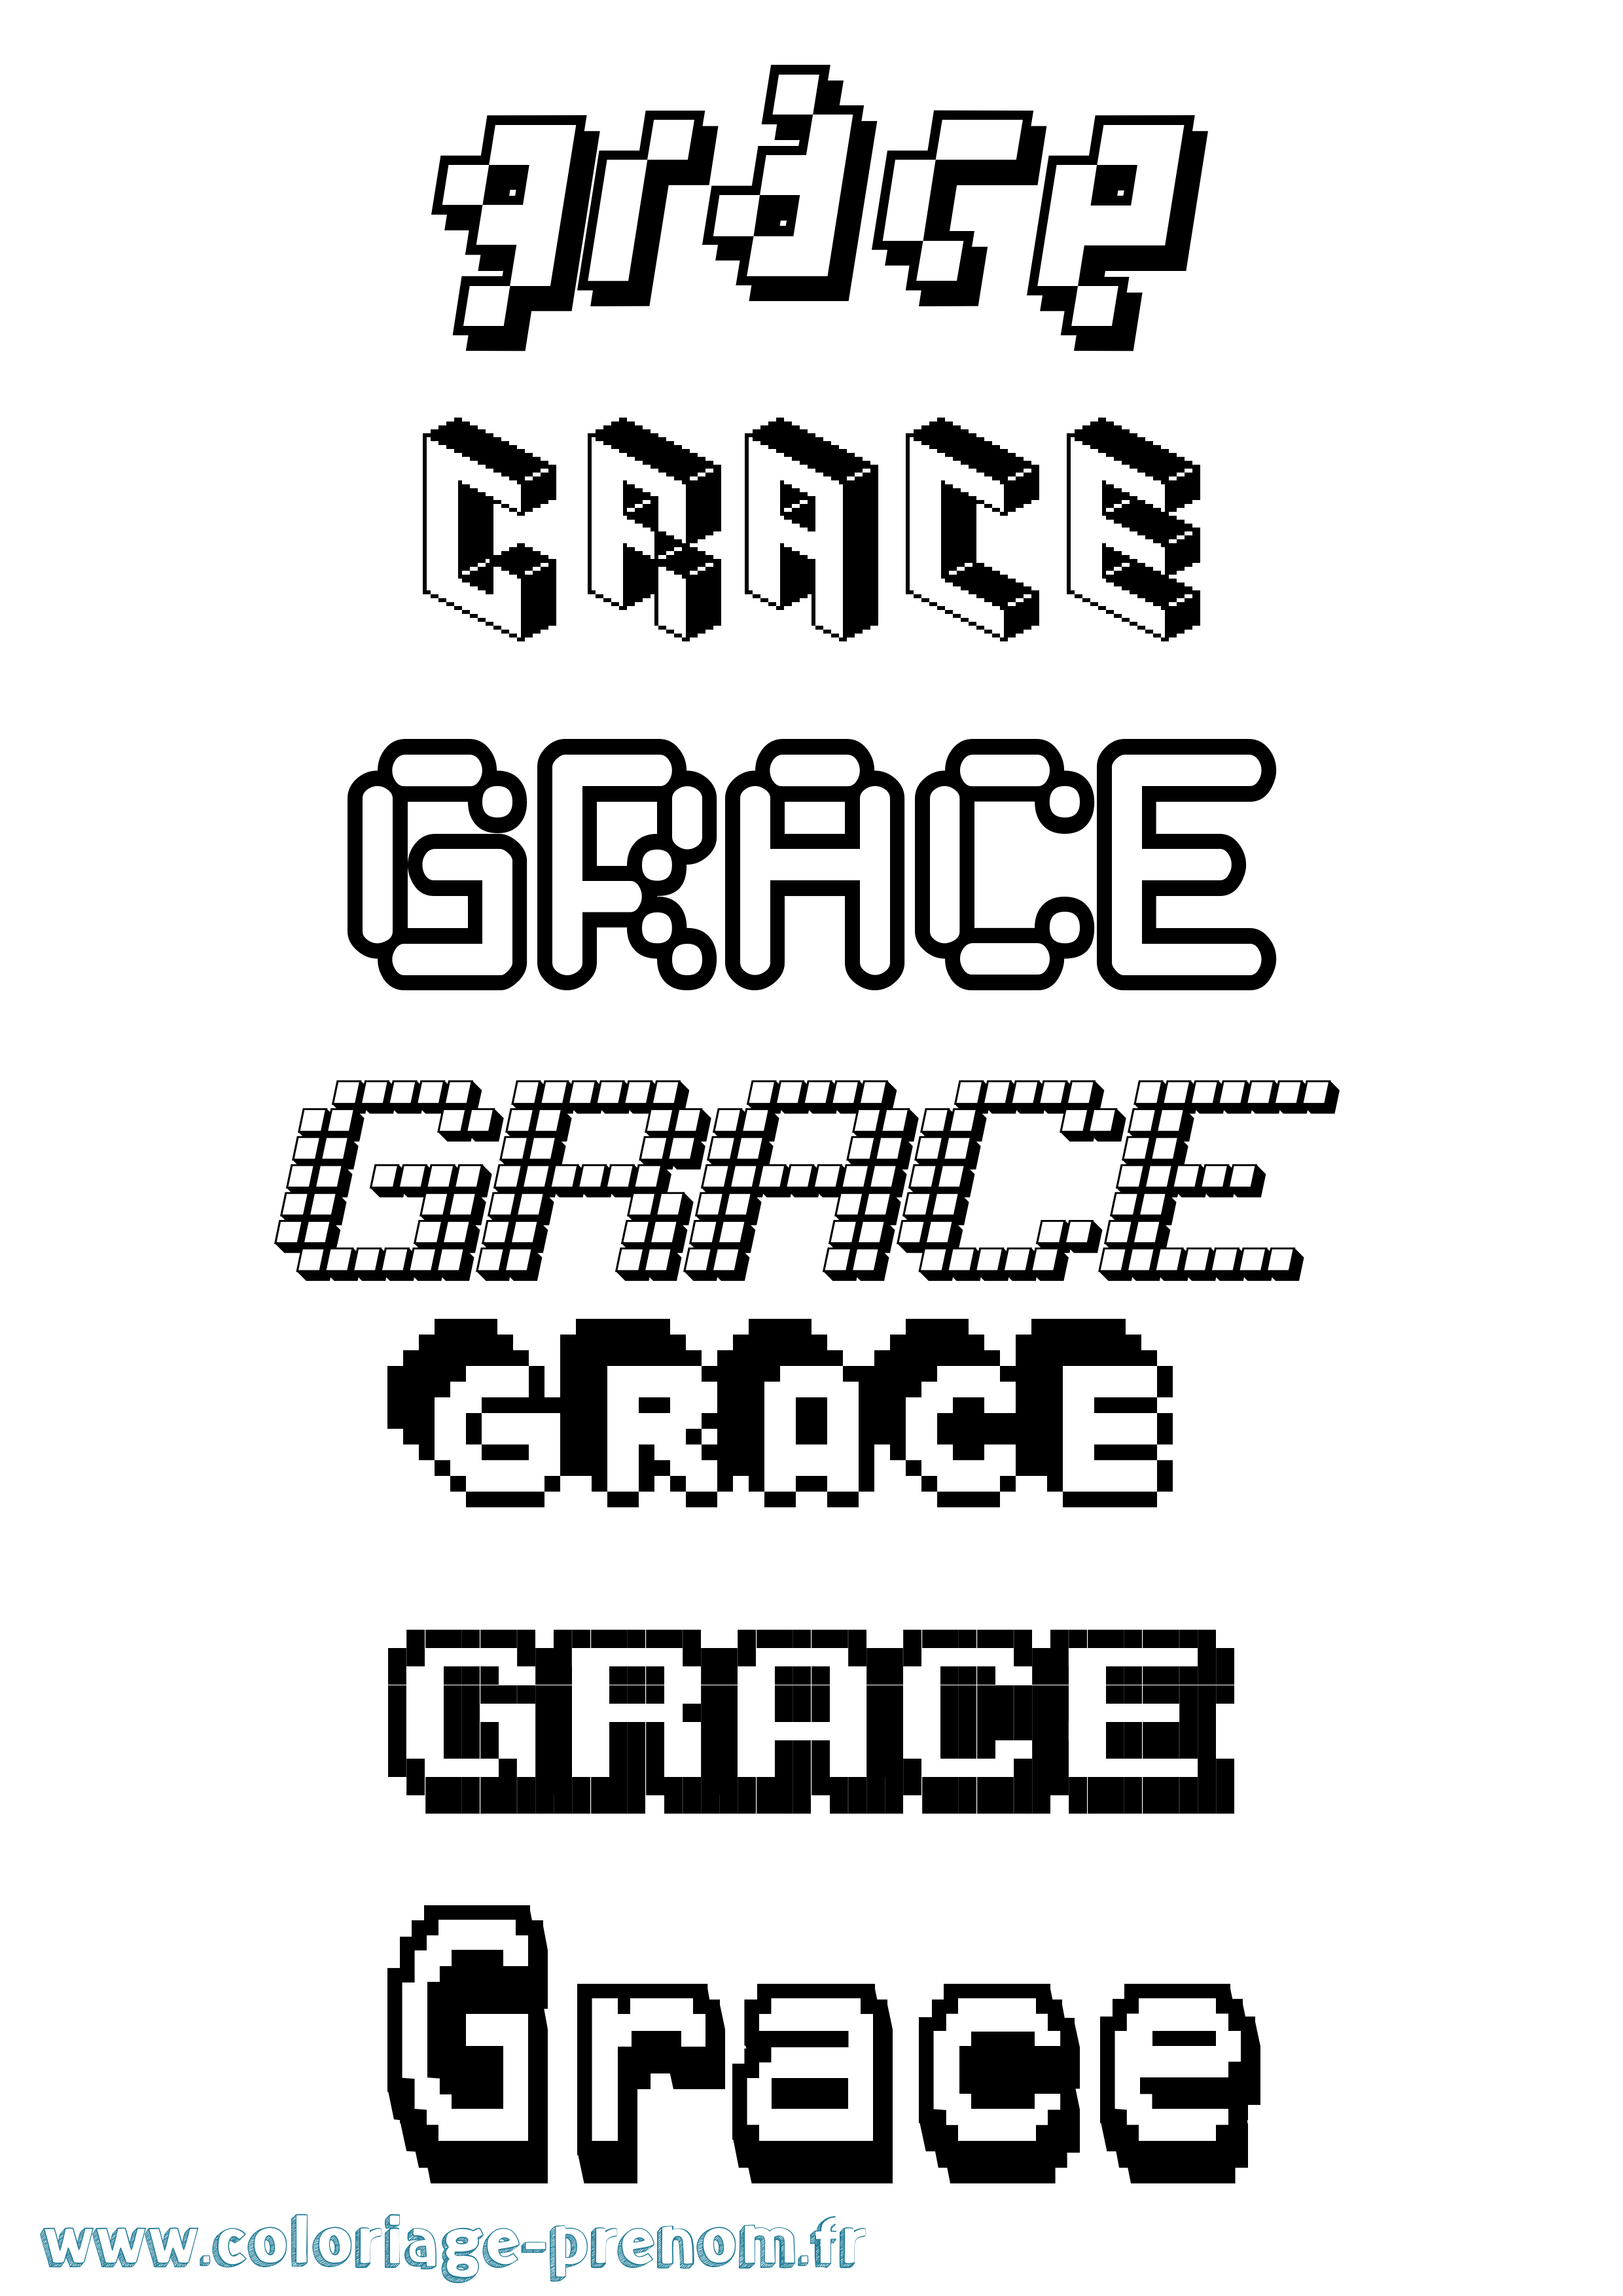 Coloriage prénom Grace Pixel